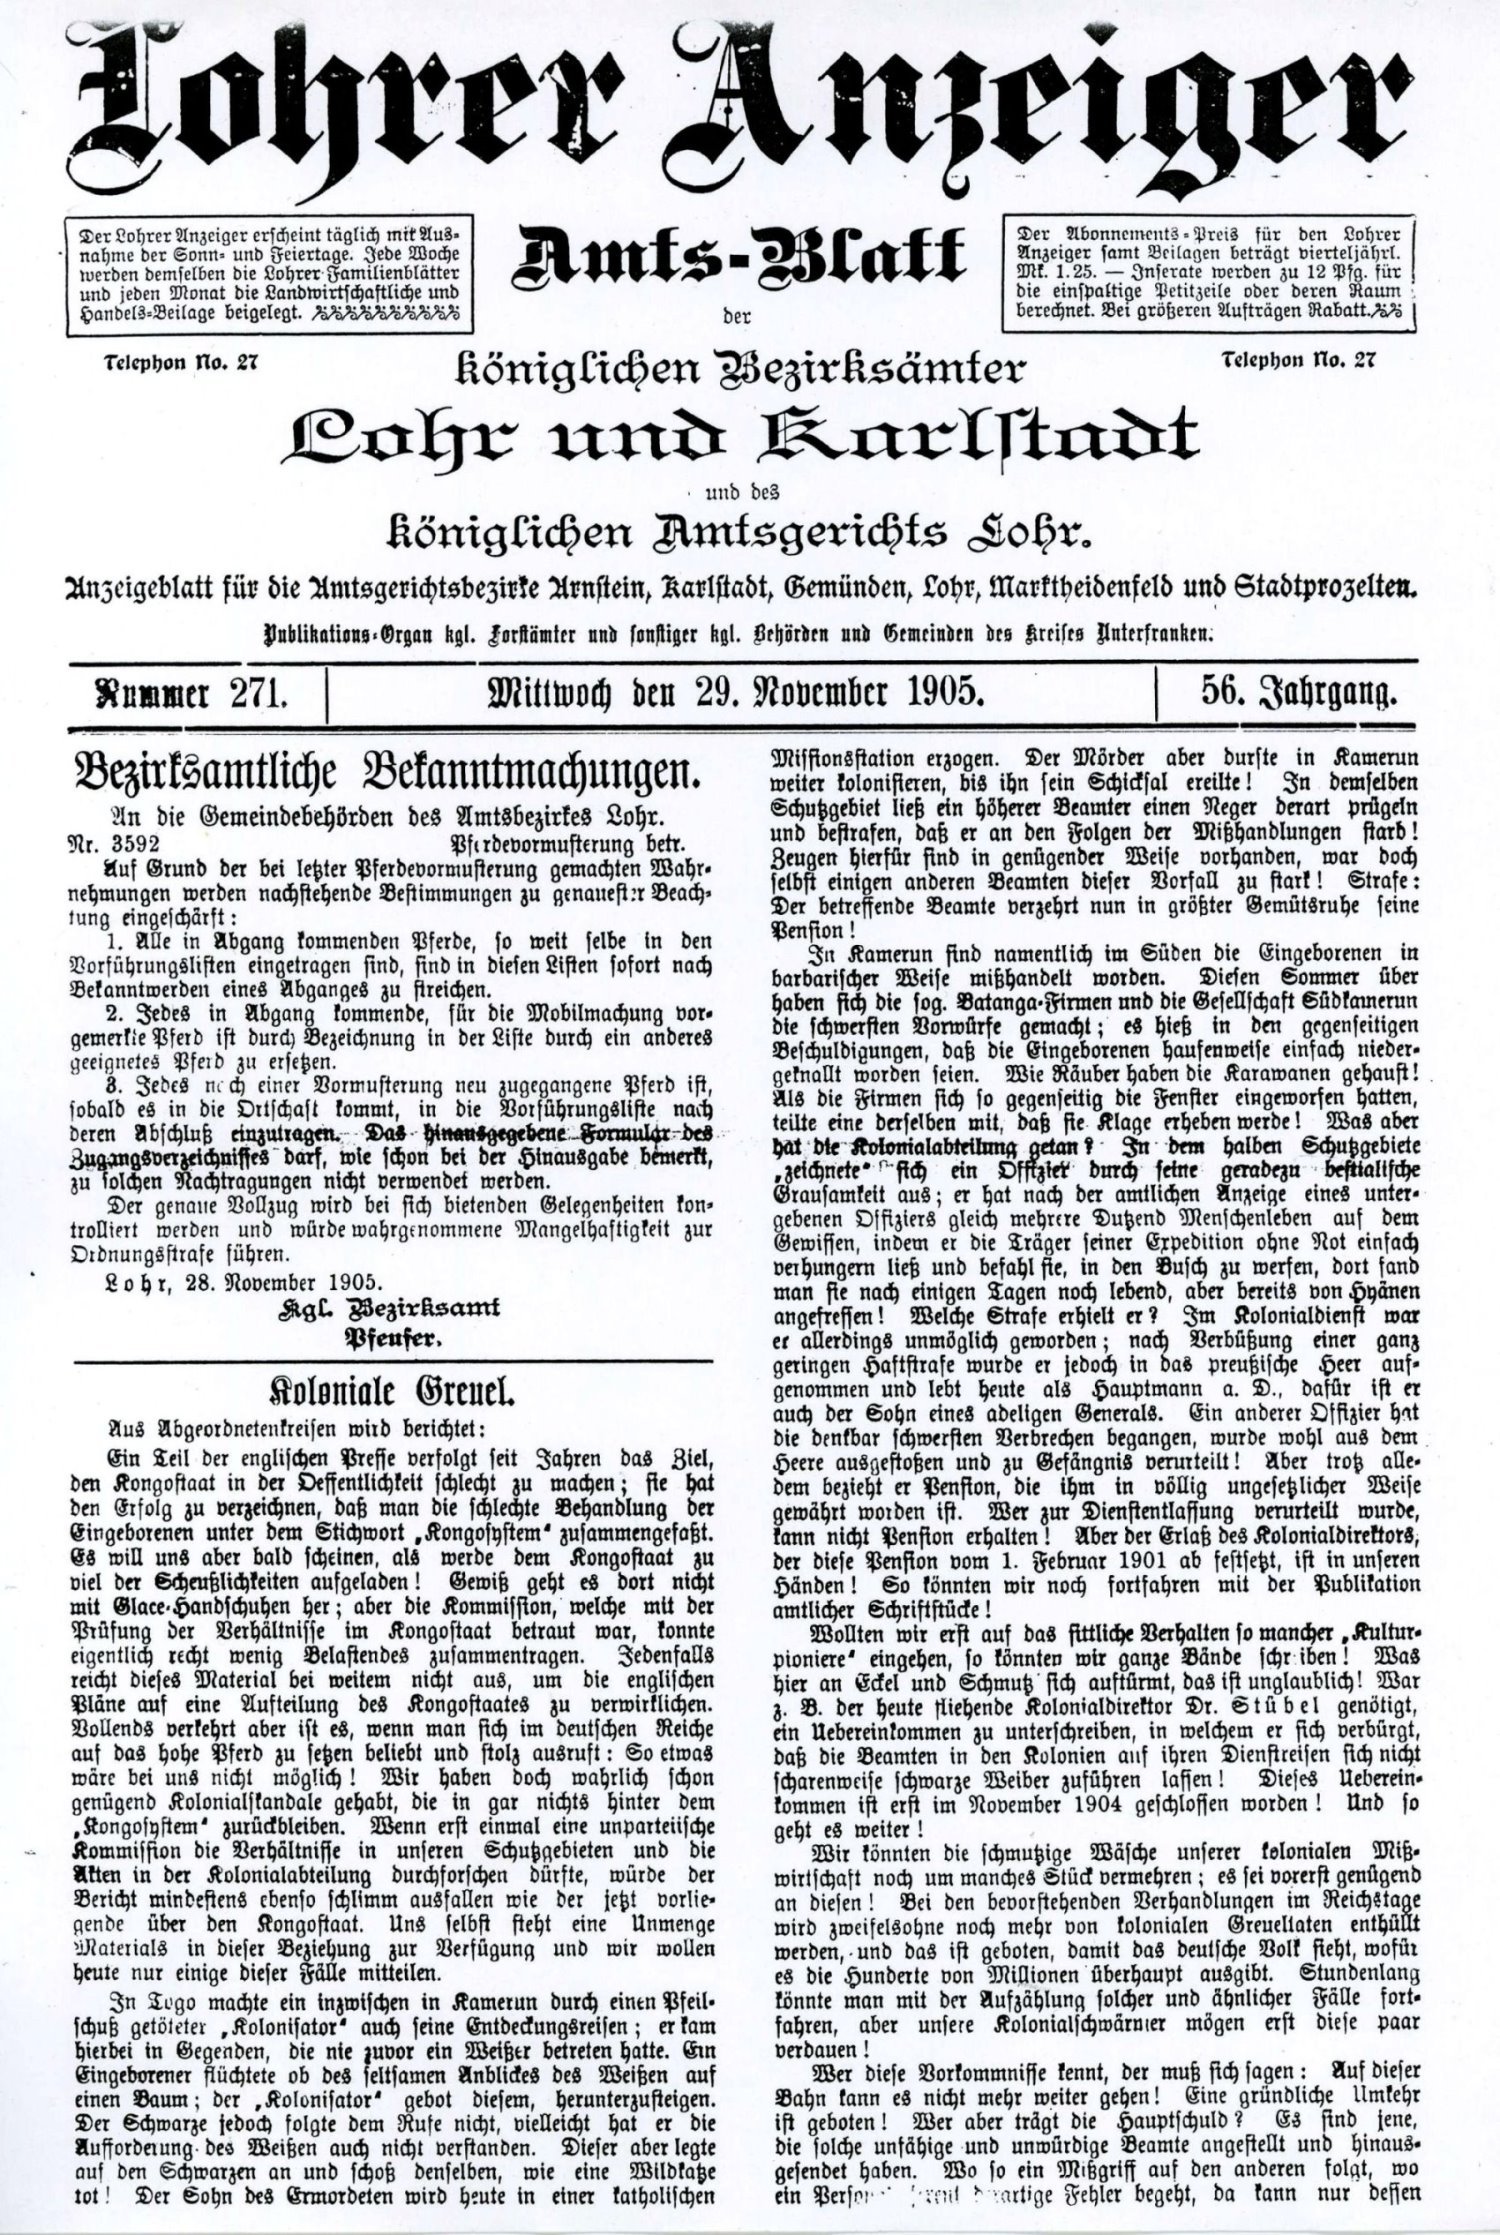 Titelseite des Lohrer Anzeigers vom 29. Nov. 1905